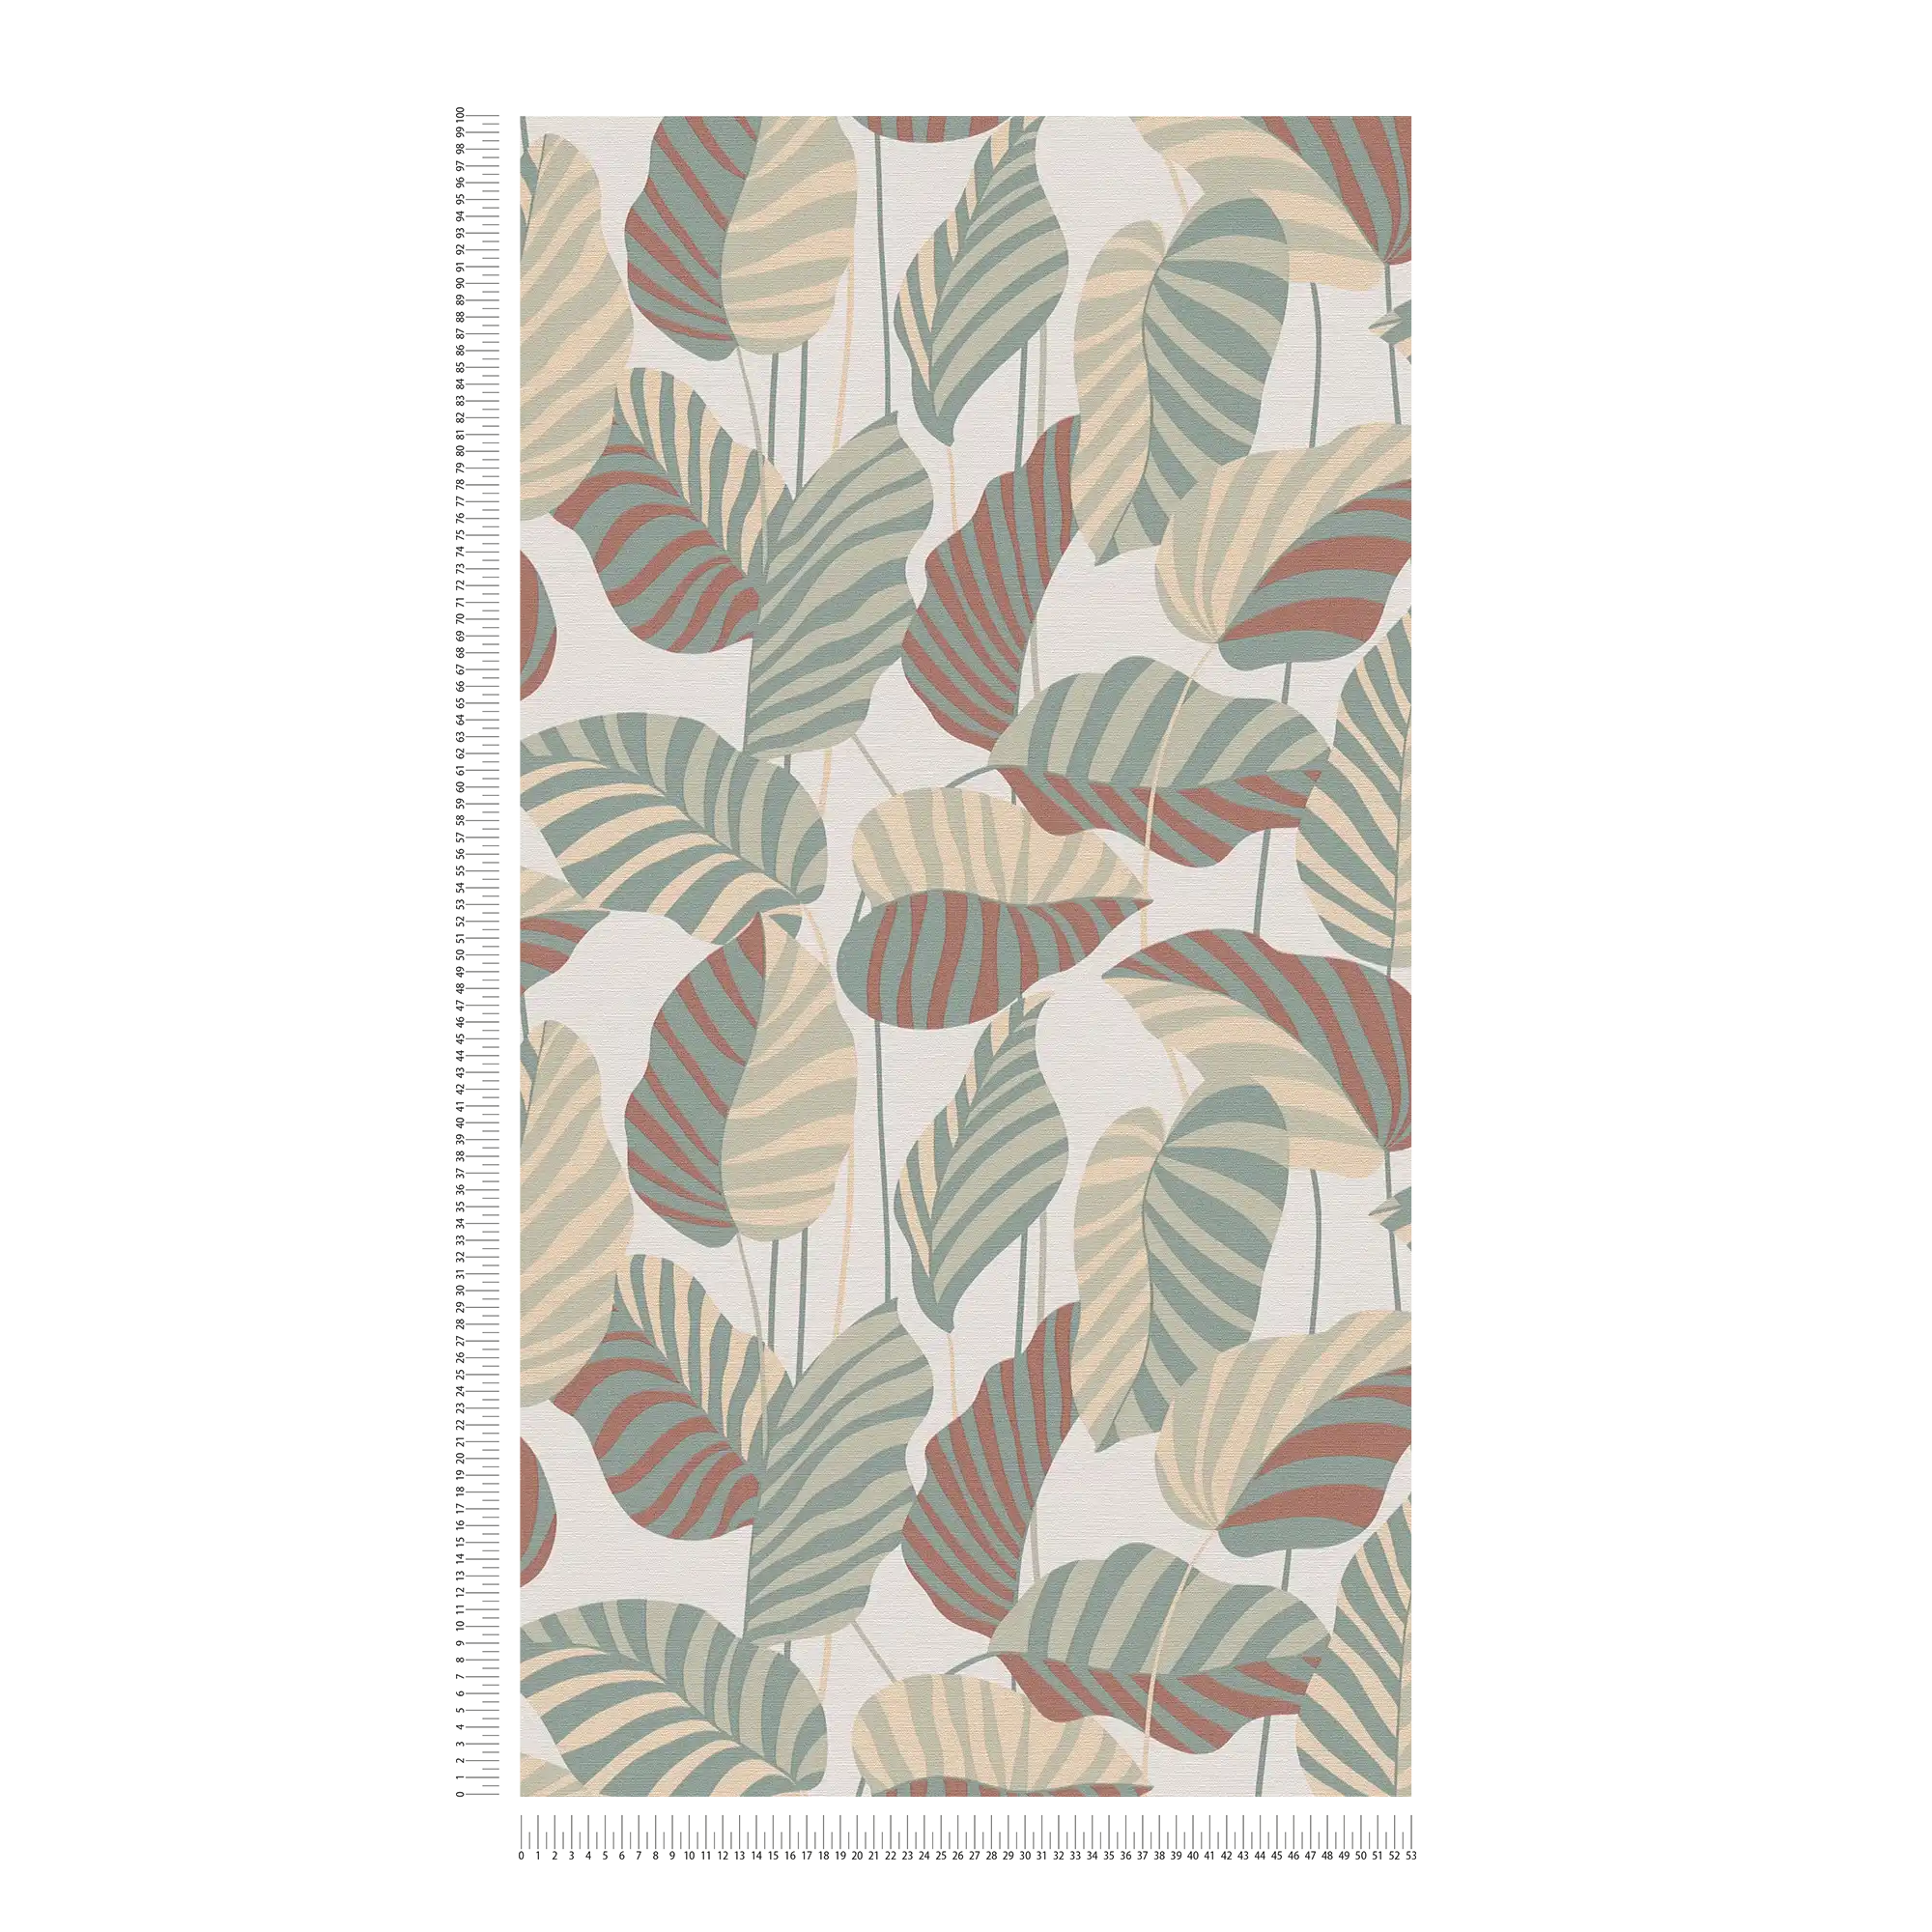             Vliestapete mit großen Palmblättern in dezenter Farbe – Weiß, Grün, Orangerot
        